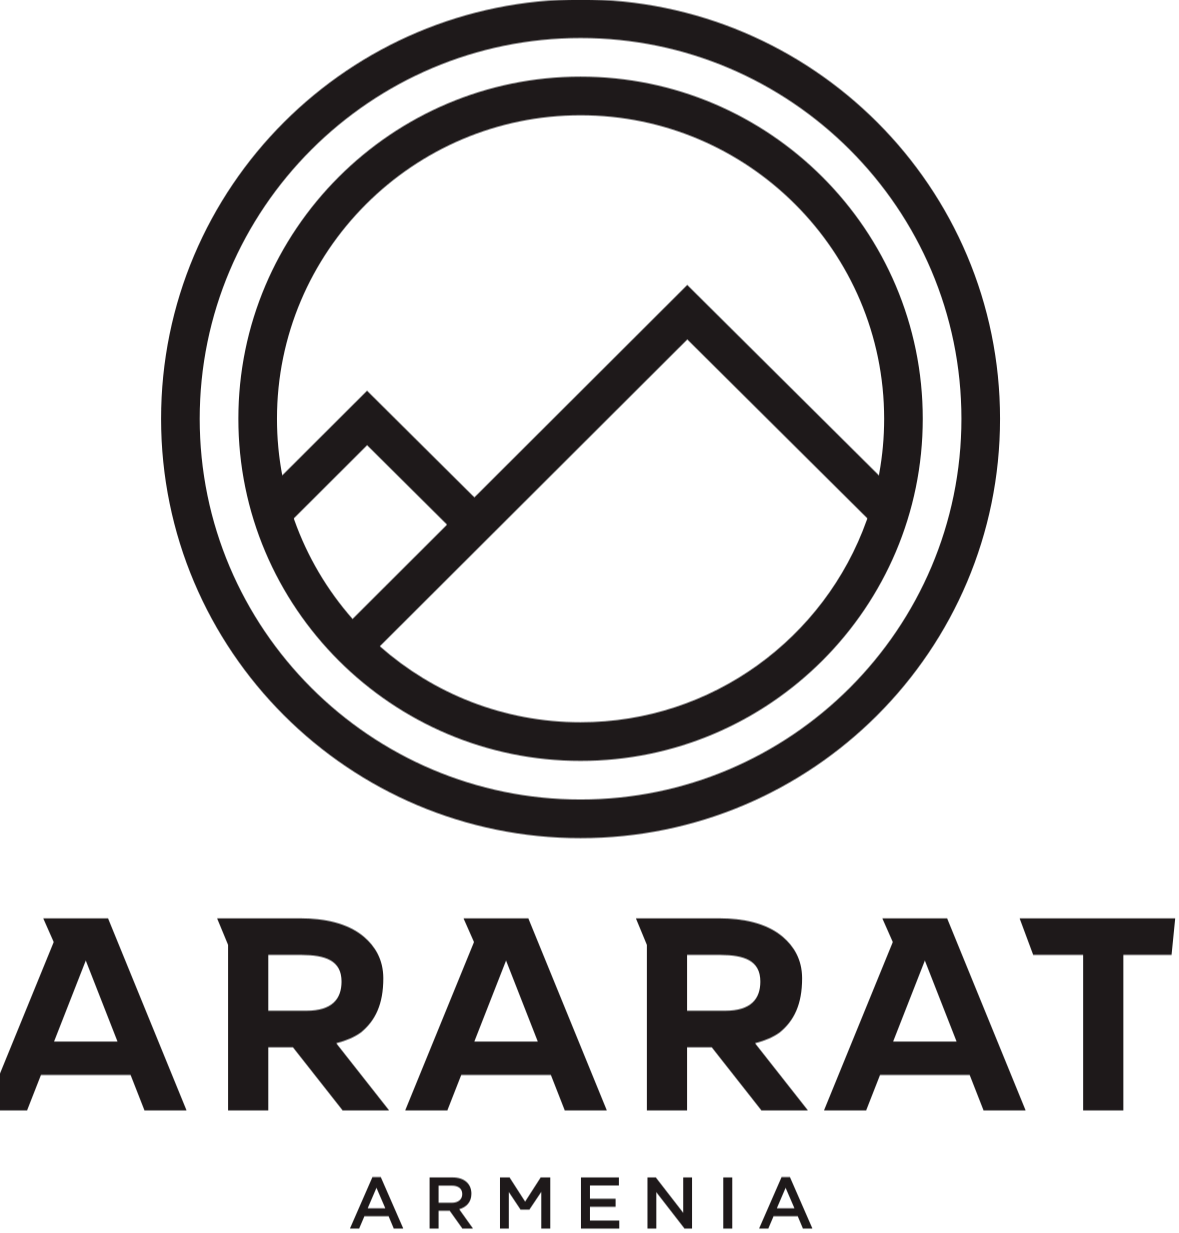 '阿拉拉特亚美尼亚